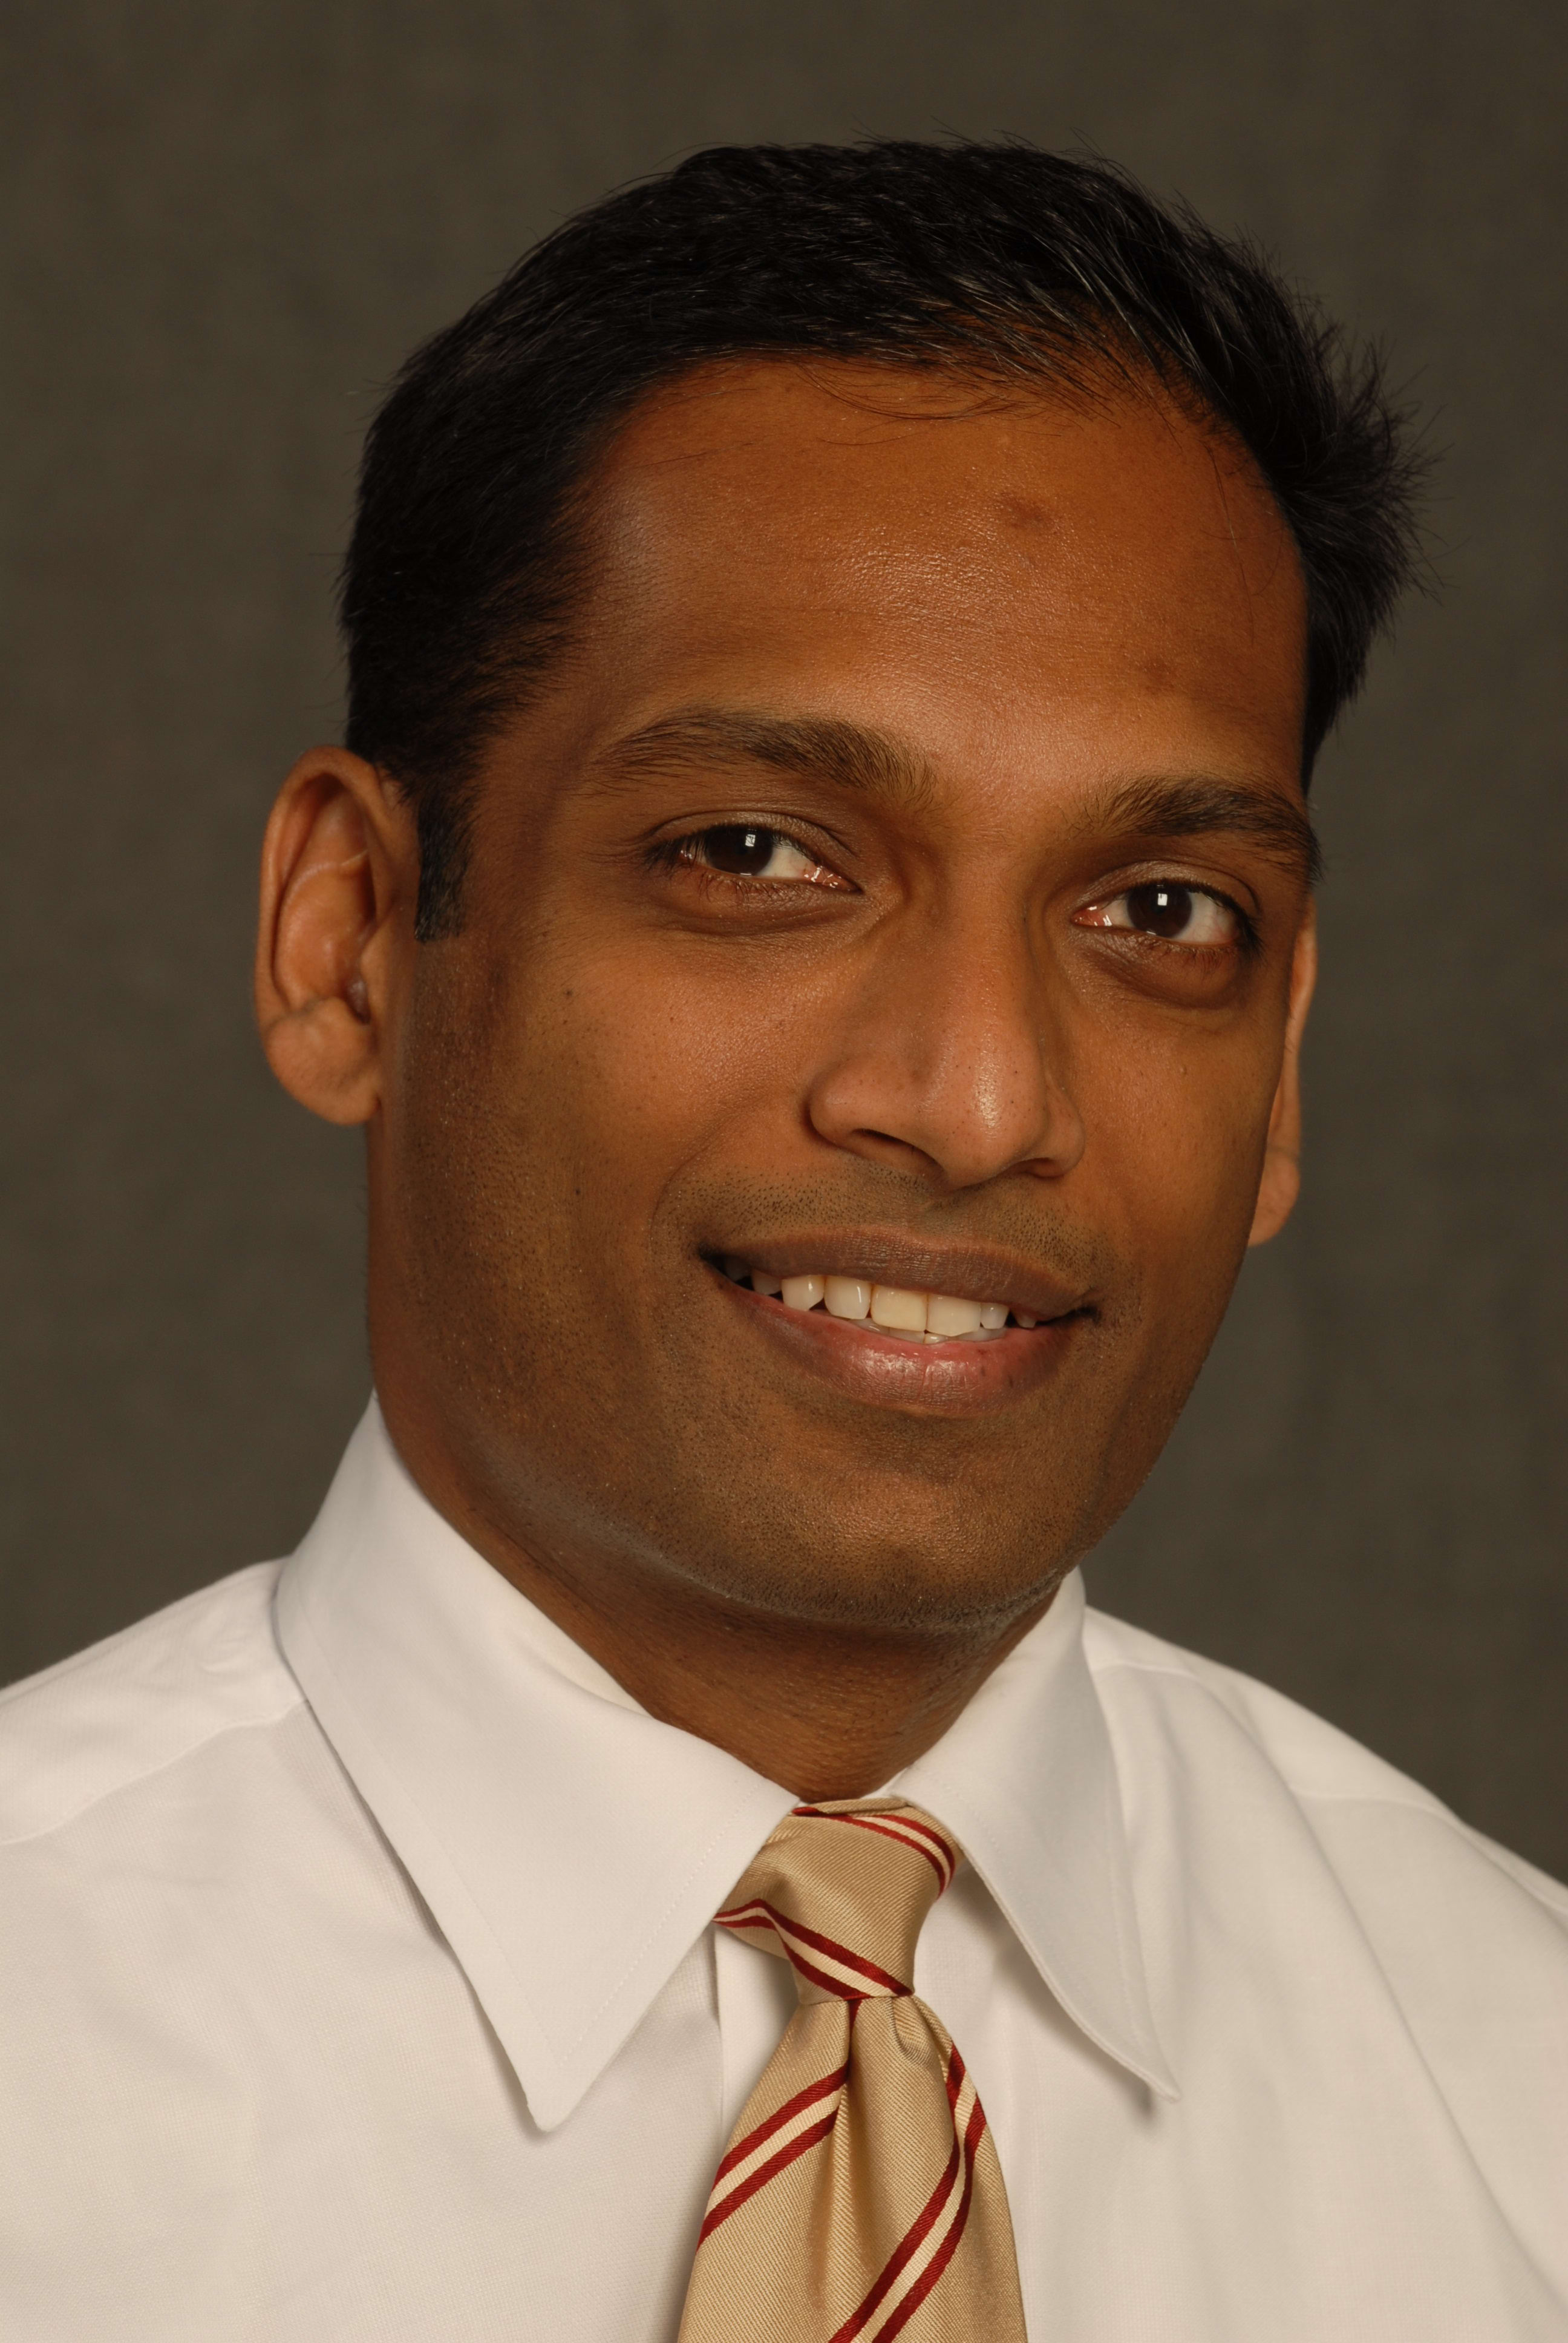 Dr. Kanishka Ratnayaka, MD